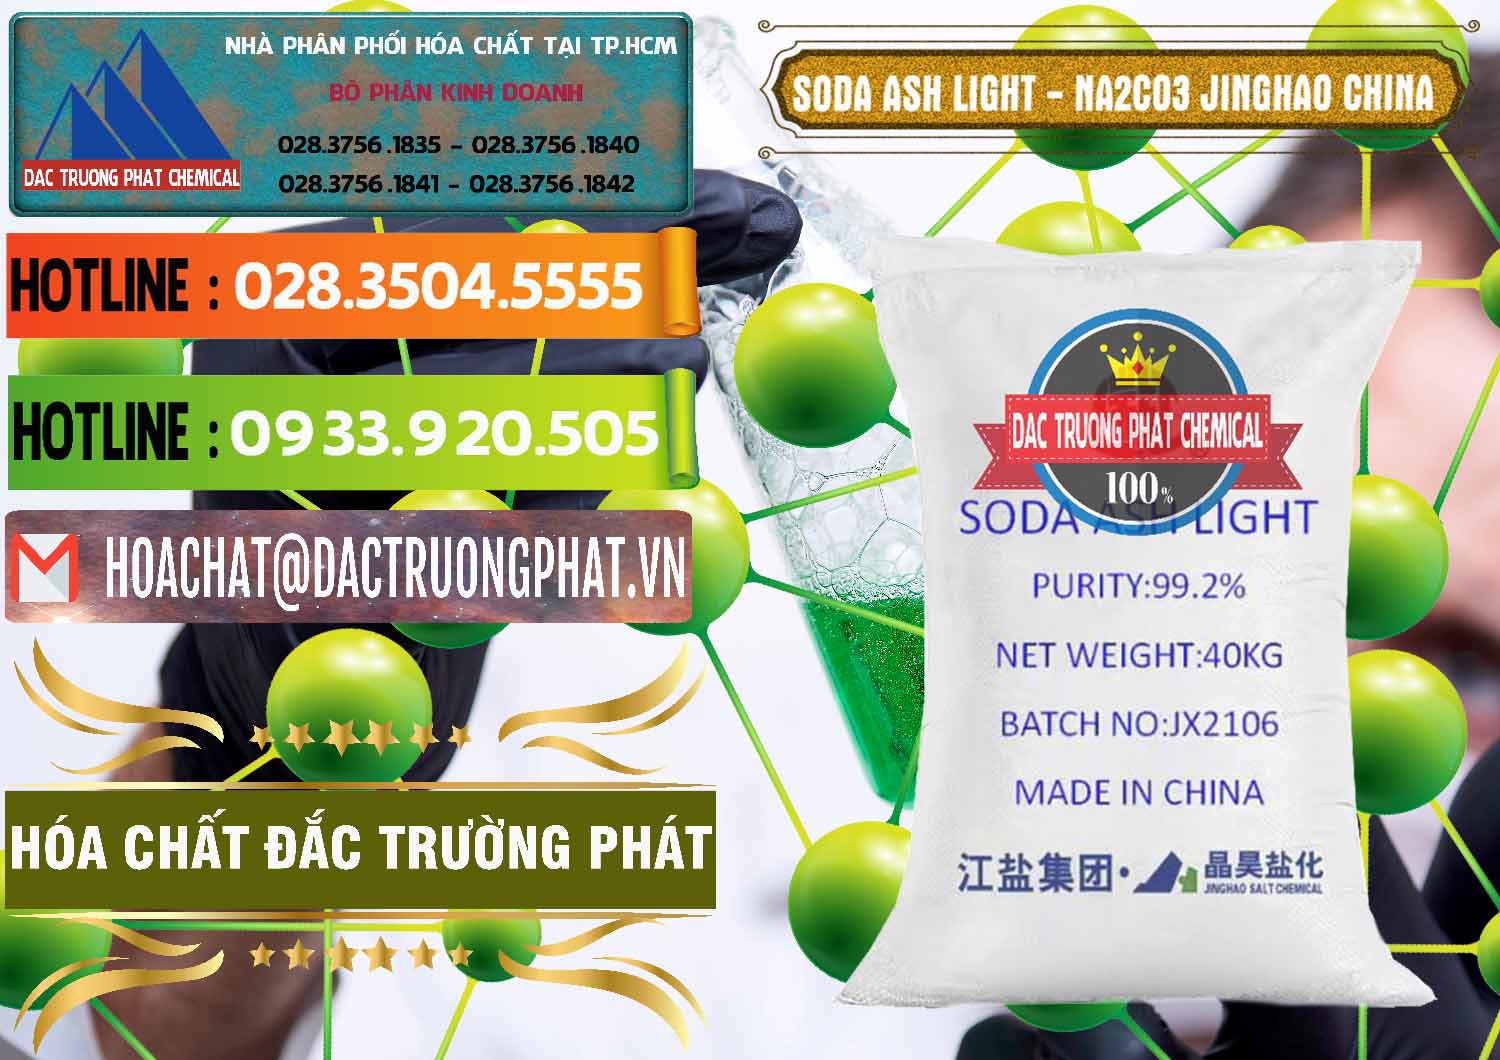 Nơi bán và phân phối Soda Ash Light - NA2CO3 Jinghao Trung Quốc China - 0339 - Công ty nhập khẩu và phân phối hóa chất tại TP.HCM - cungcaphoachat.com.vn